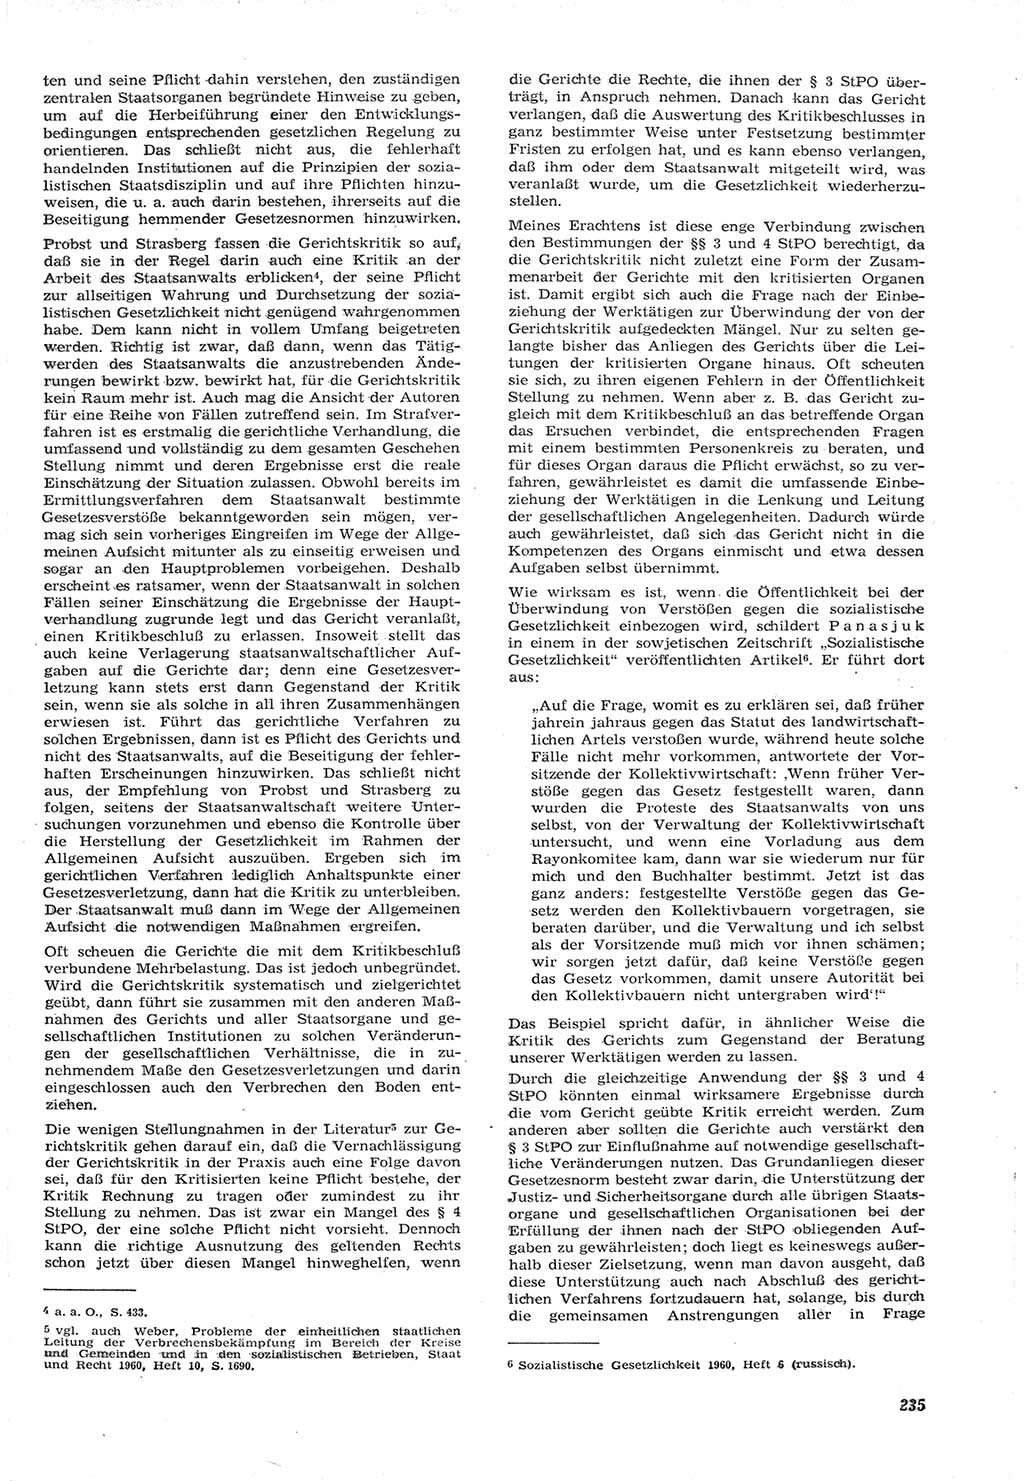 Neue Justiz (NJ), Zeitschrift für Recht und Rechtswissenschaft [Deutsche Demokratische Republik (DDR)], 15. Jahrgang 1961, Seite 235 (NJ DDR 1961, S. 235)